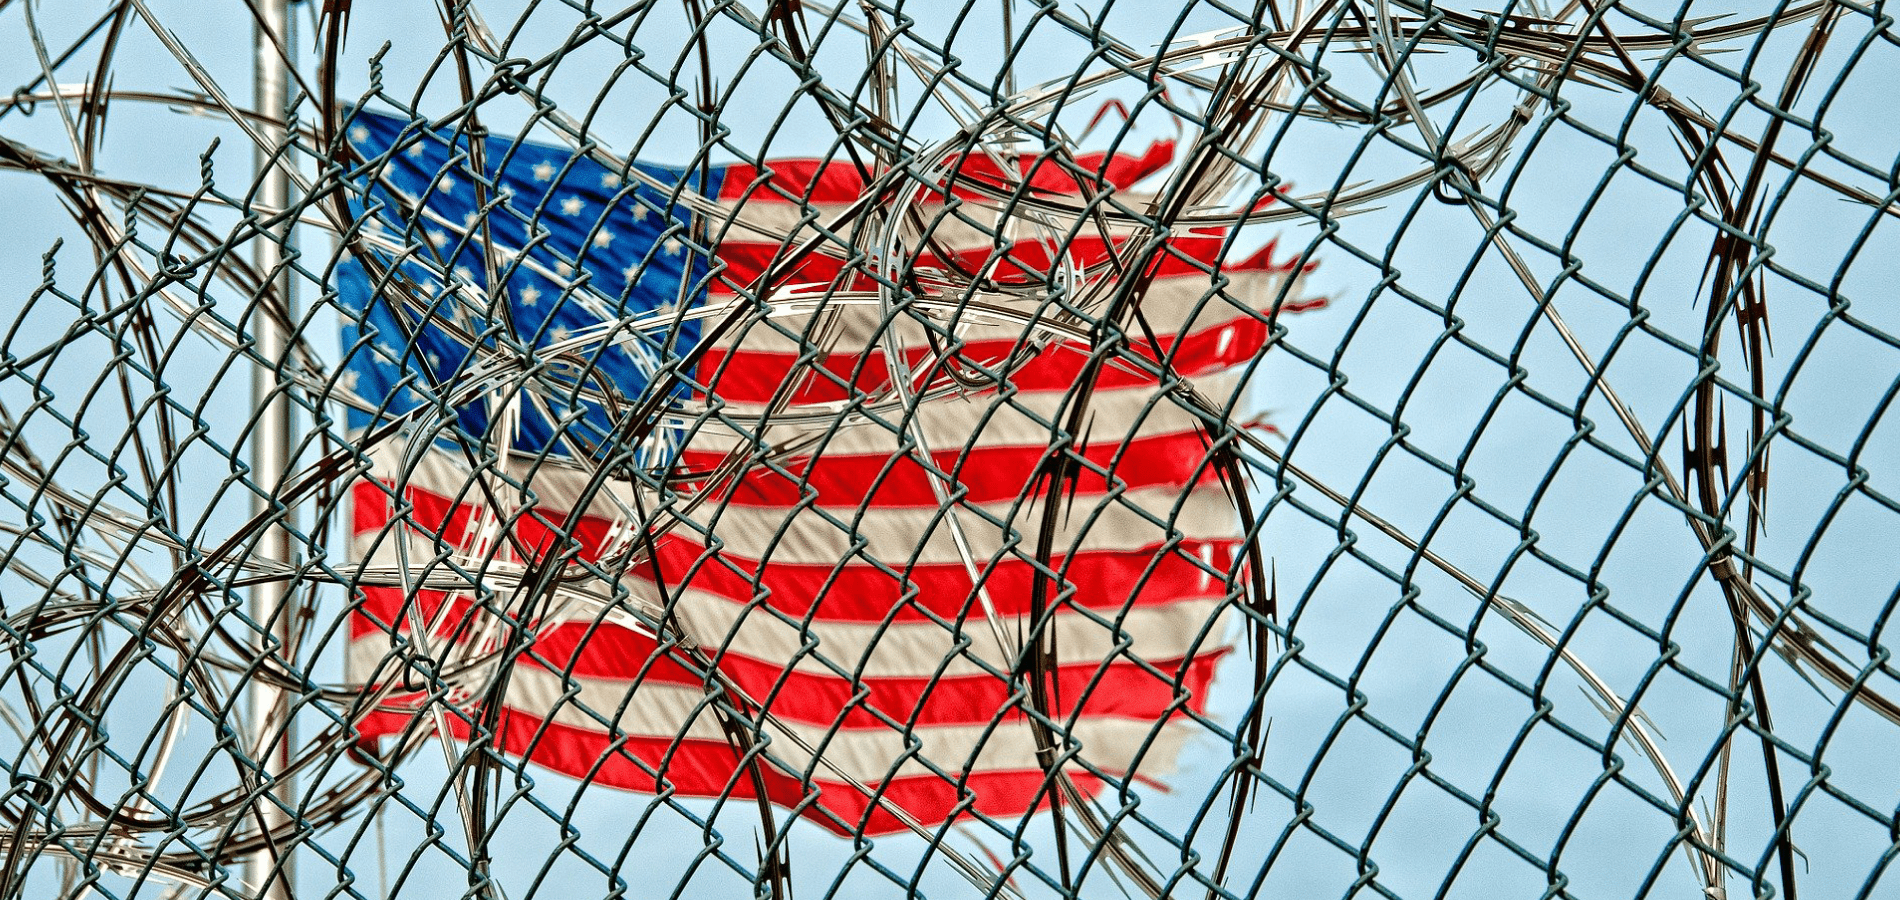 USA Flag behind a prison gate